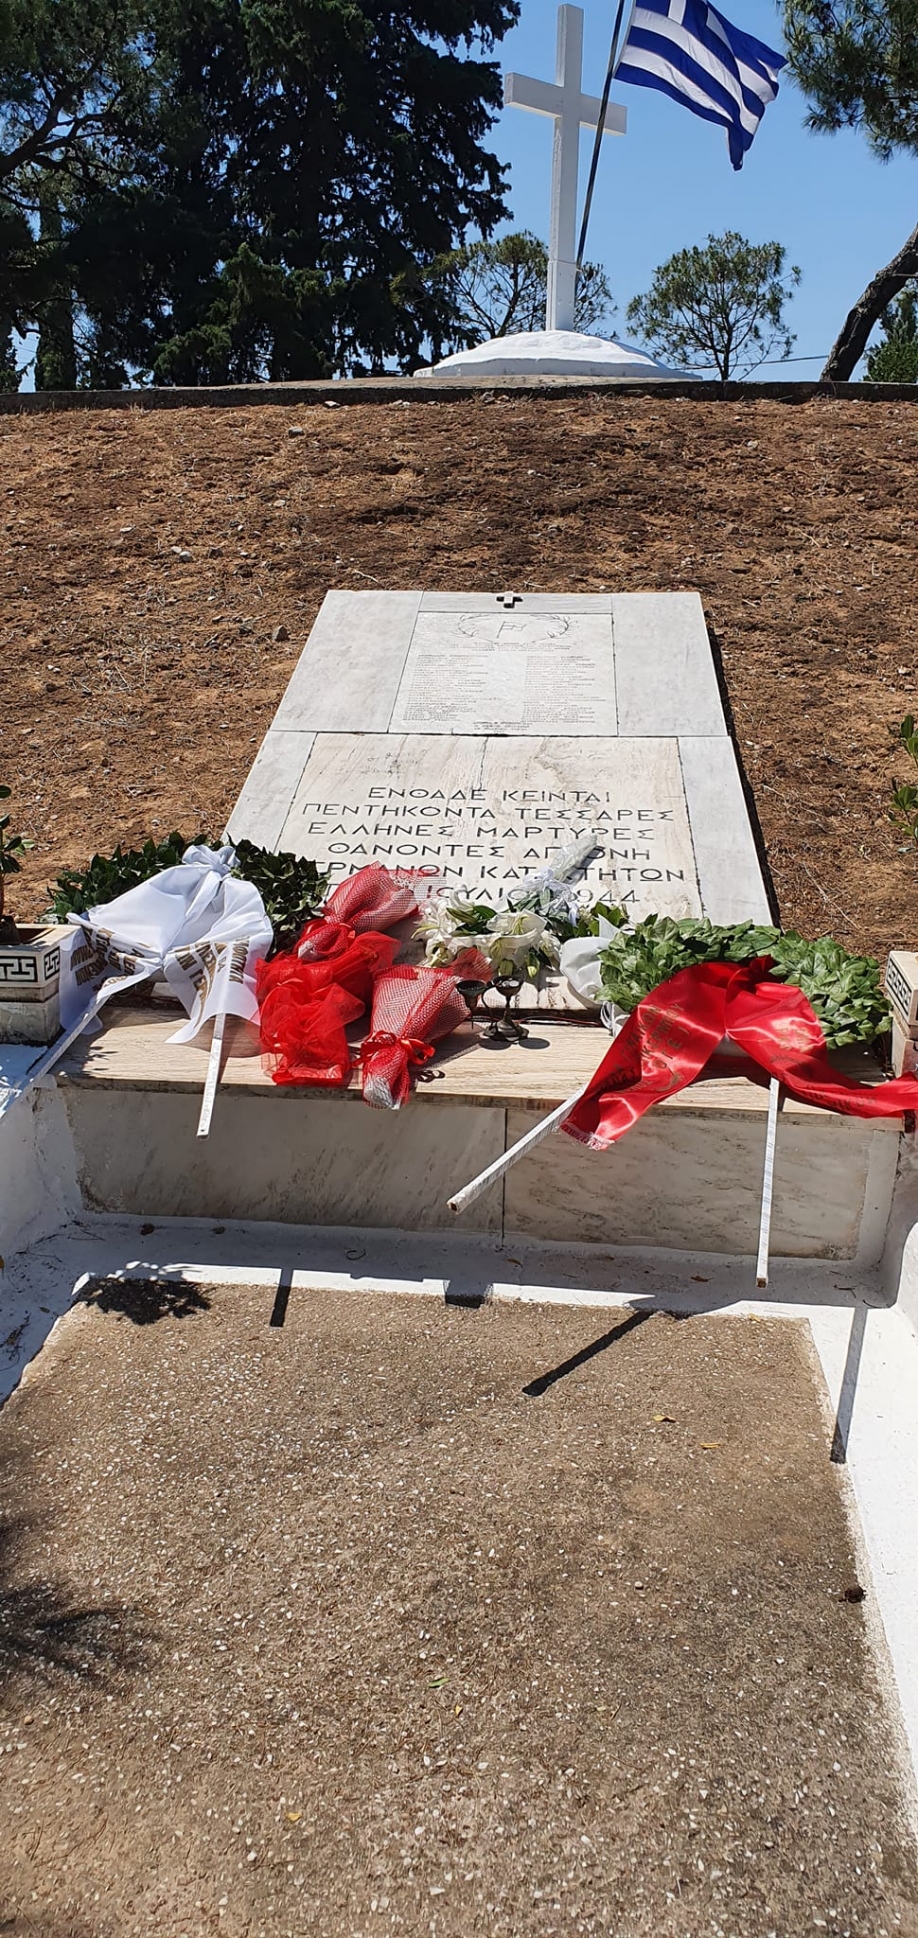 Τίμησε την ημέρα μνήμης για τους 54 απαγχονισθέντες από τους ναζί στο Πικέρμι ο Δήμος Χαλανδρίου